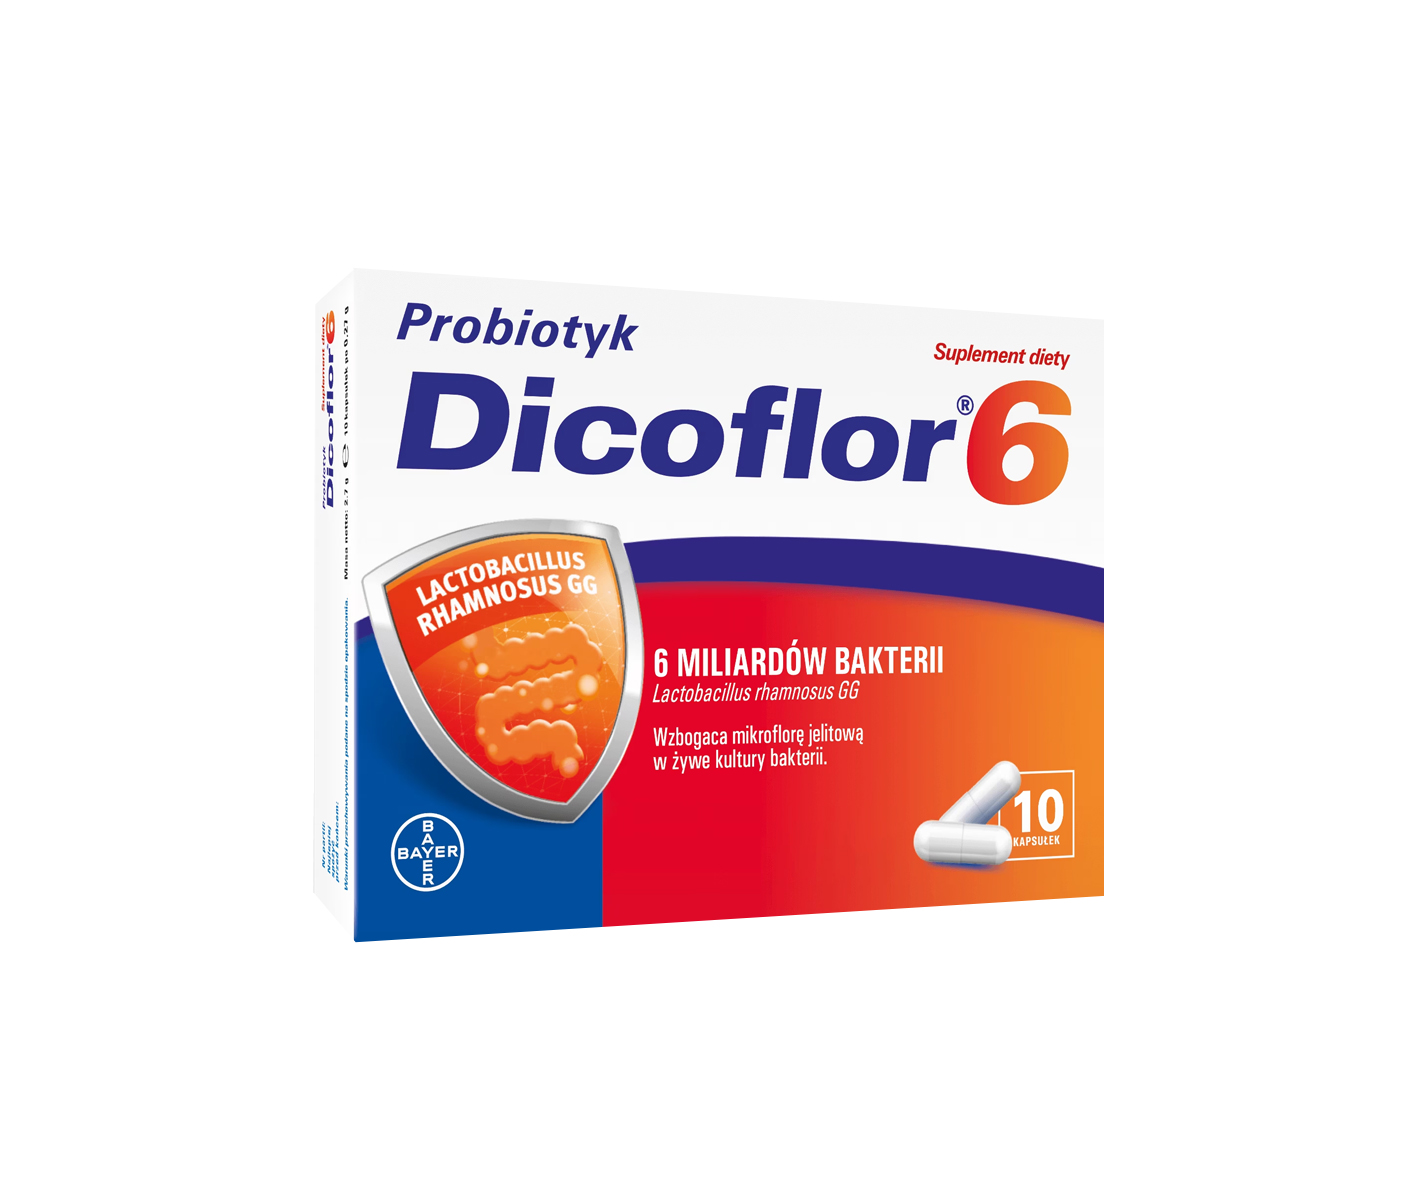 Dicoflor 6, probiotisk